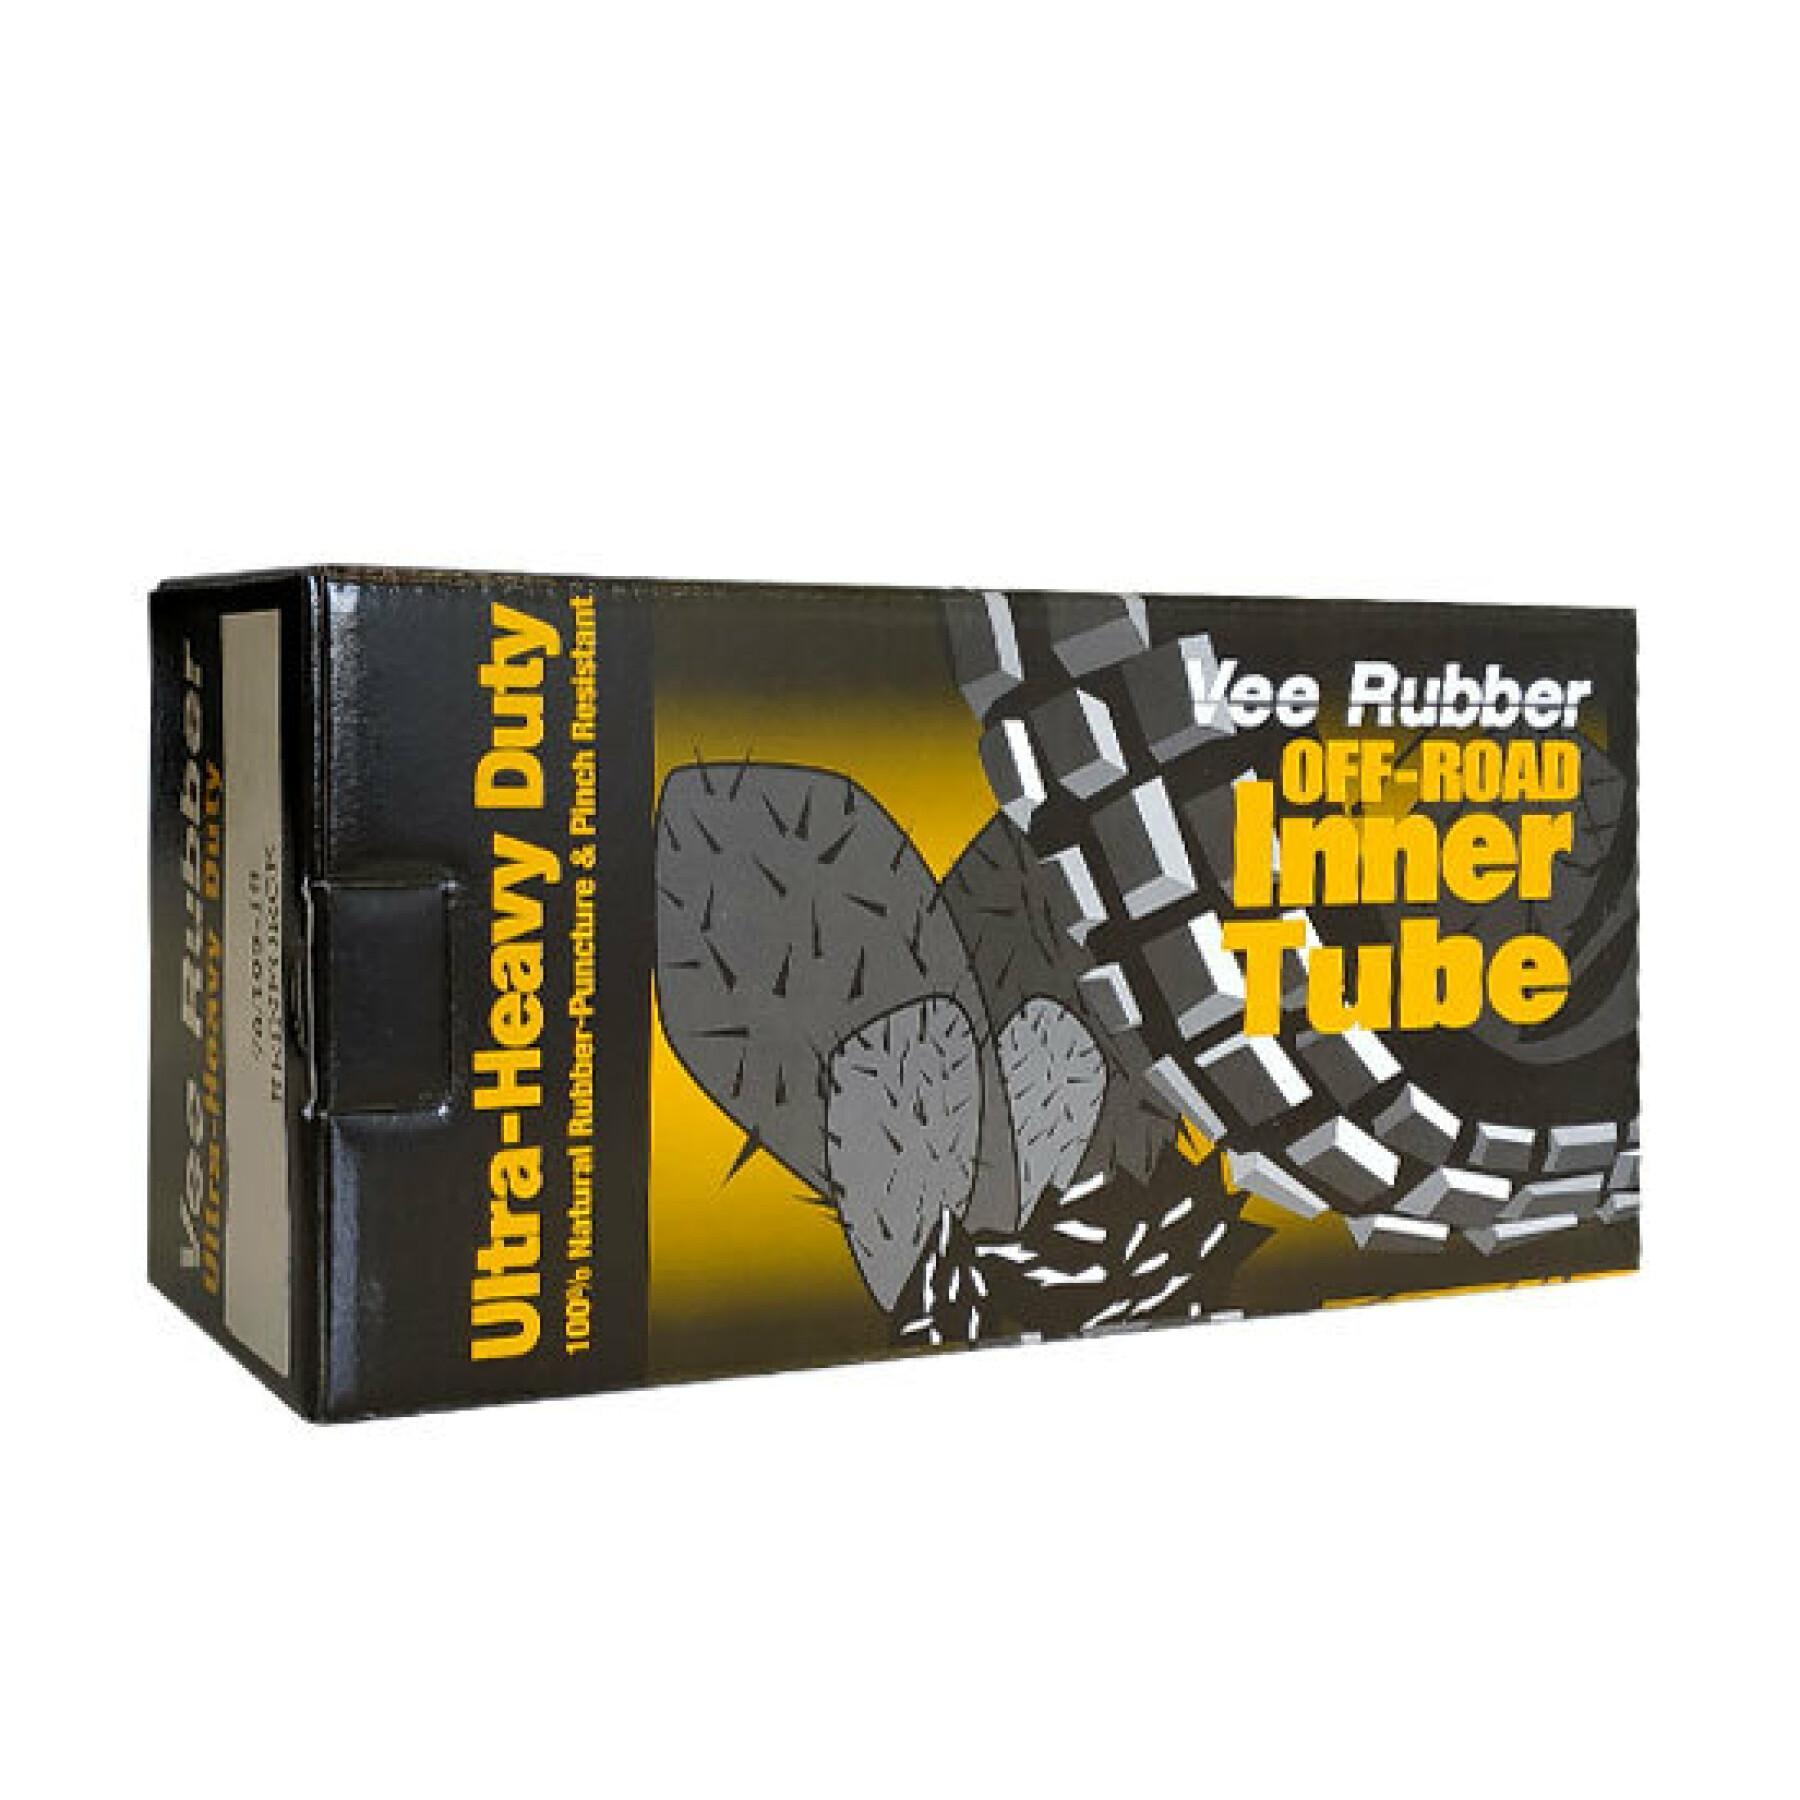 Inner tube Vee Rubber 100/100-18 TR4 SUPER HEAVY